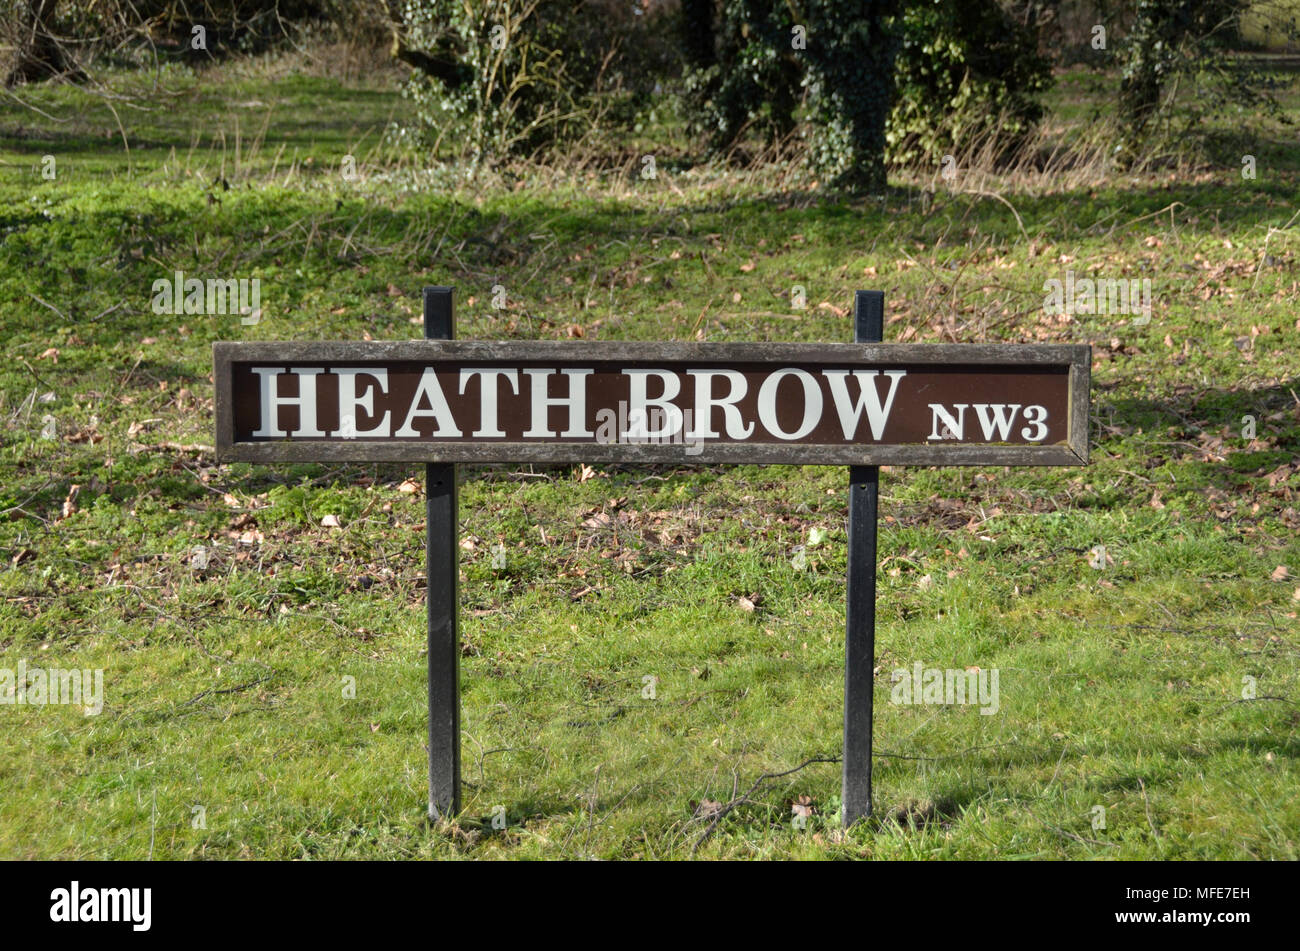 Heath Brow NW3 strada segno, Hampstead, Londra, Regno Unito. Foto Stock